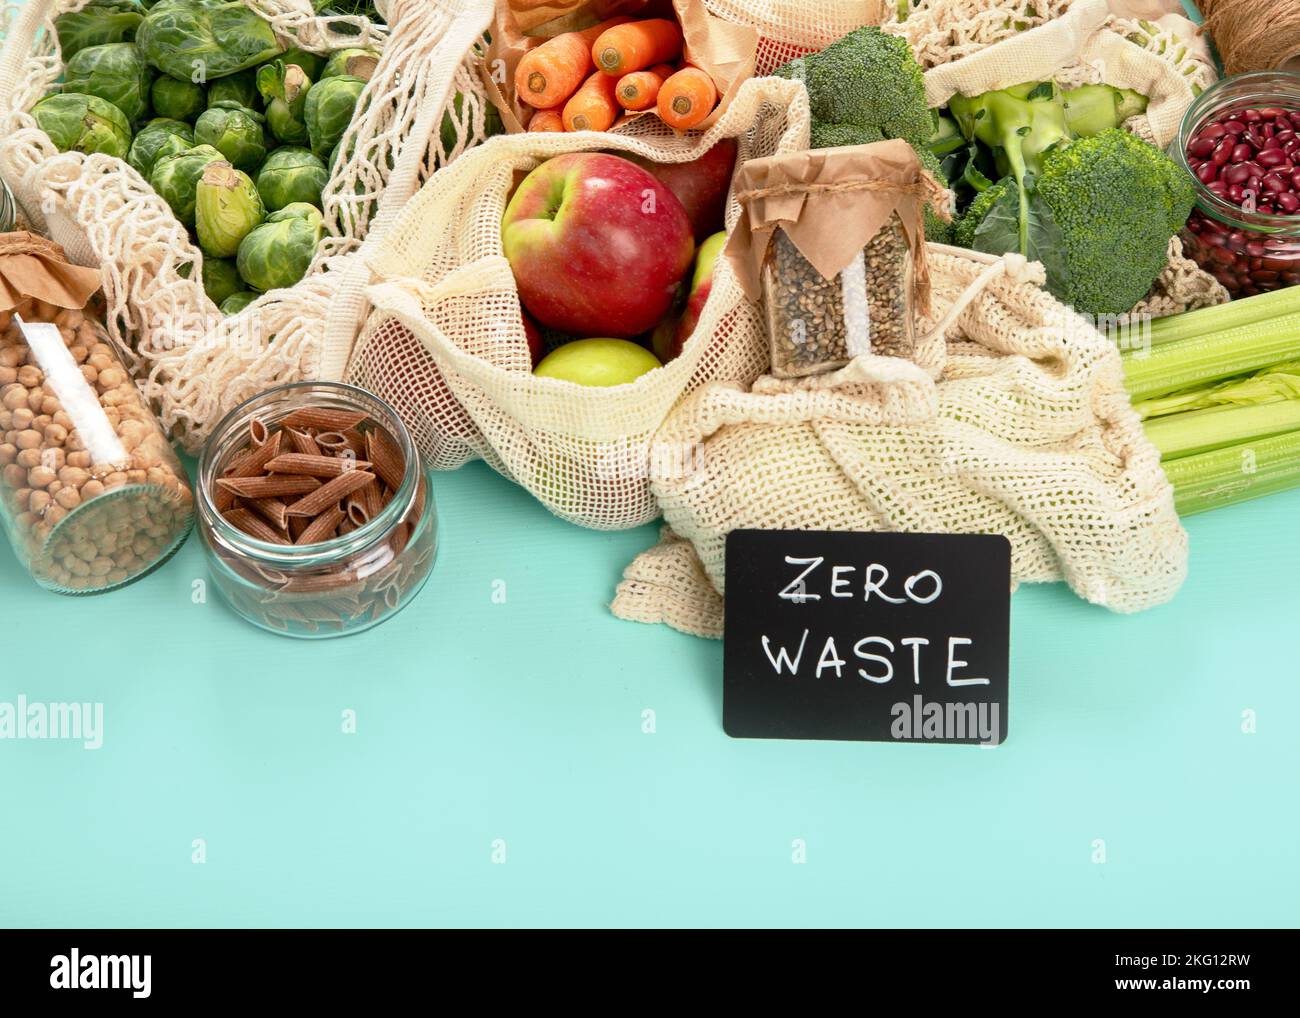 Verschiedene Bio-Früchte und Gemüse in wiederverwendbaren Verpackungsbeuteln. Umweltfreundliches Lifestyle-Konzept. Kunststoffartikel. Wiederverwenden, reduzieren, verweigern. Oben vi Stockfoto